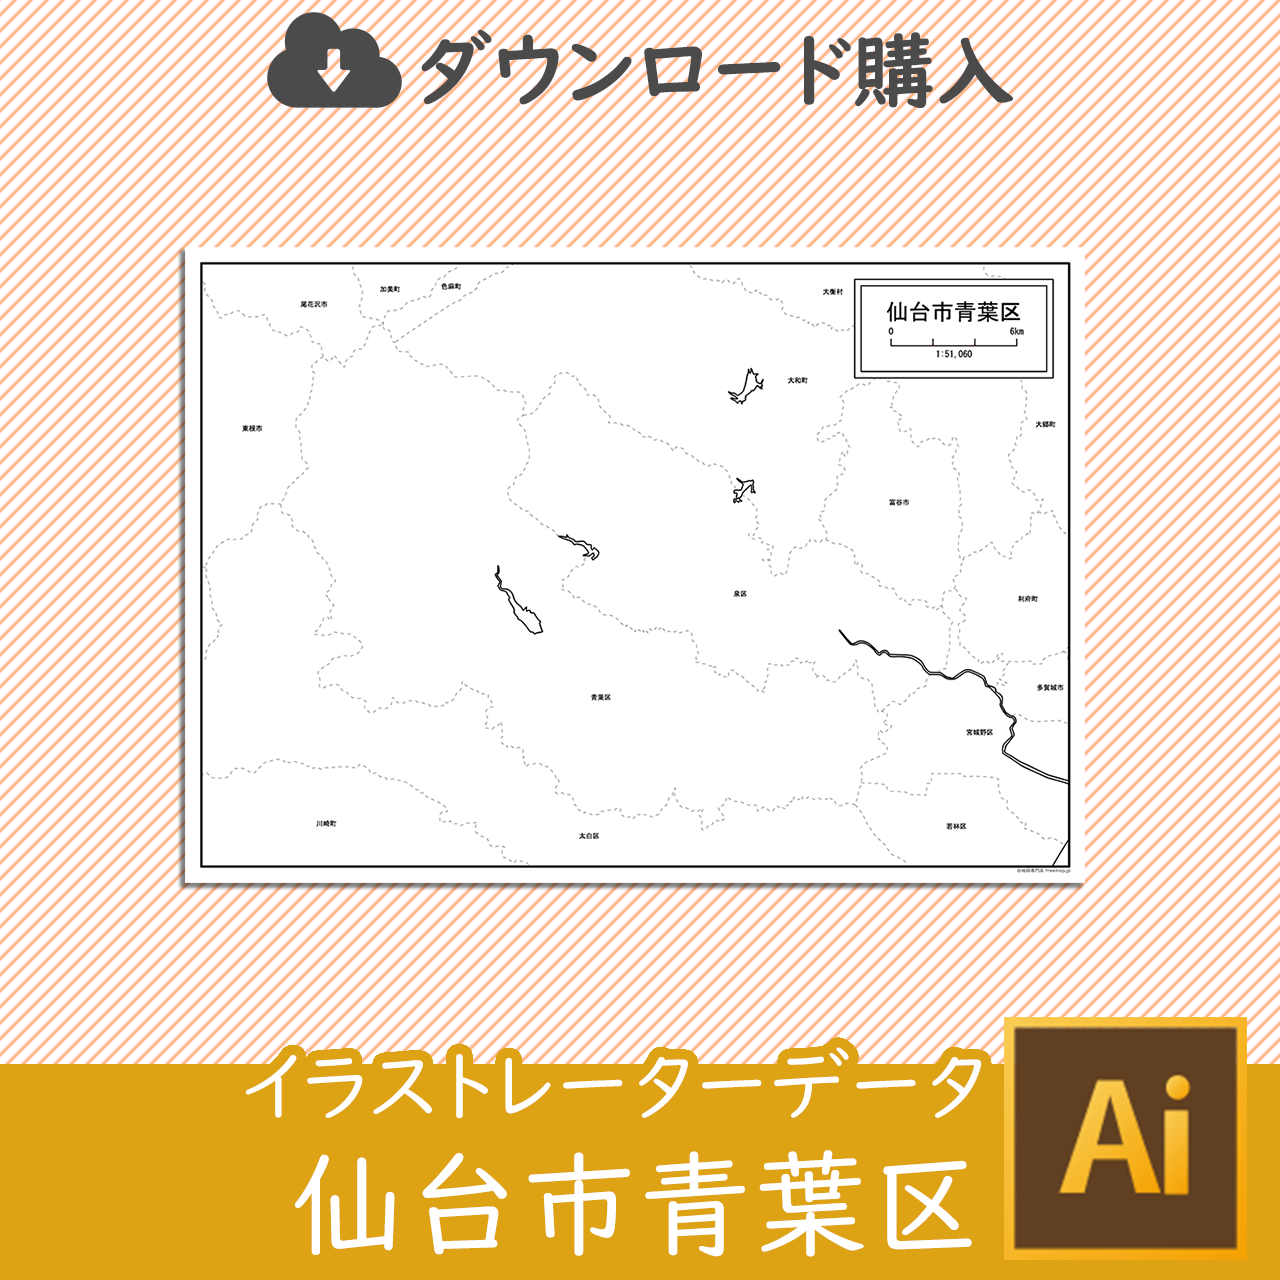 仙台市青葉区のaiデータのサムネイル画像